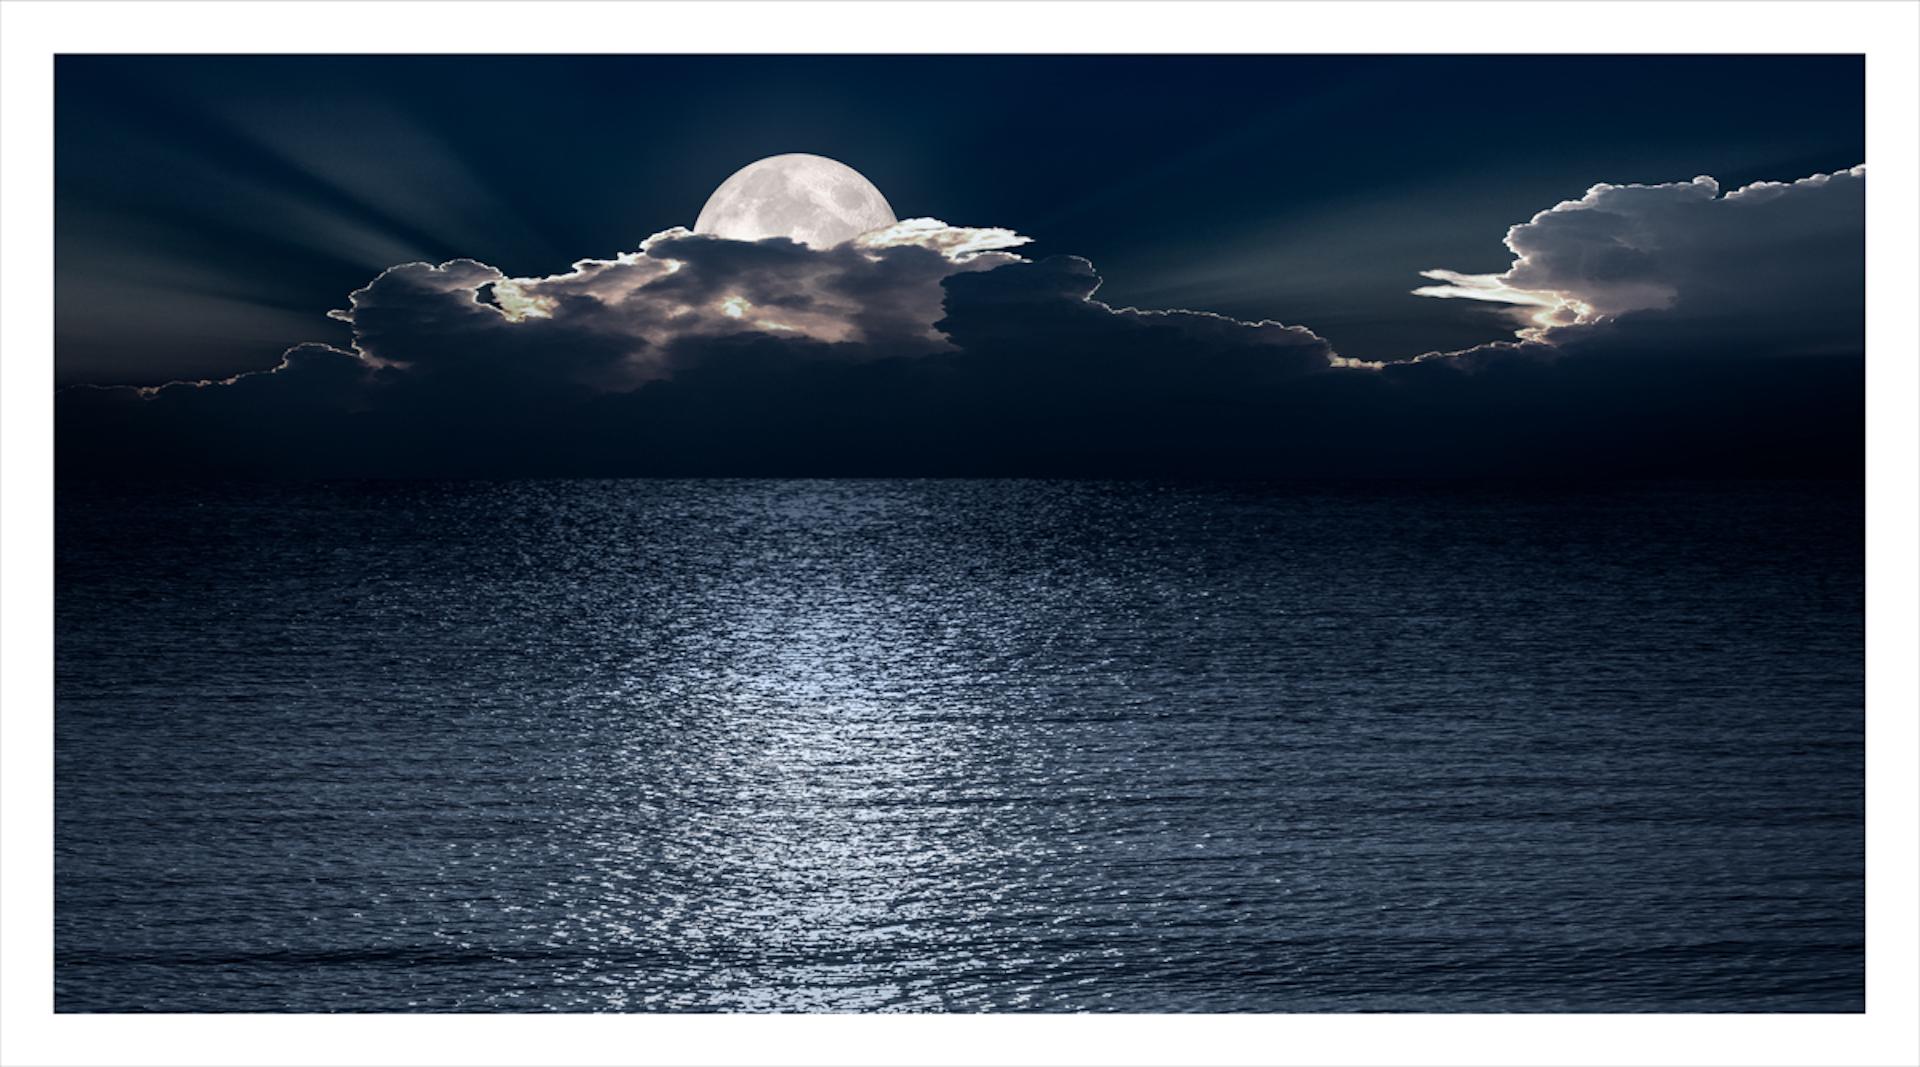 Lune n°06 - Photograph de Bob Tabor